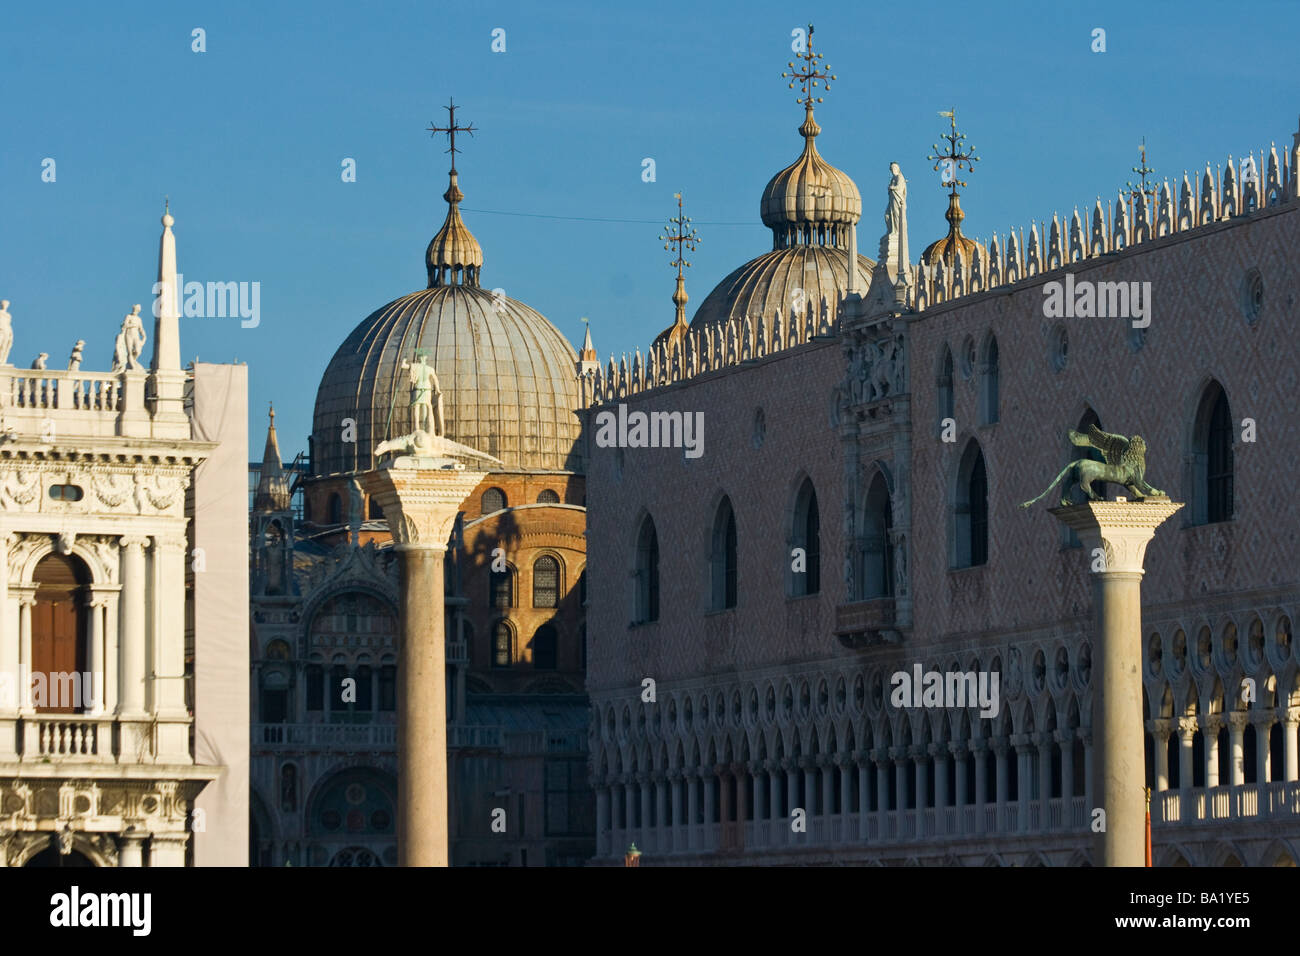 Les dômes de la Basilique St Marc et le Palais des Doges vu depuis le Grand Canal à Venise Italie Banque D'Images